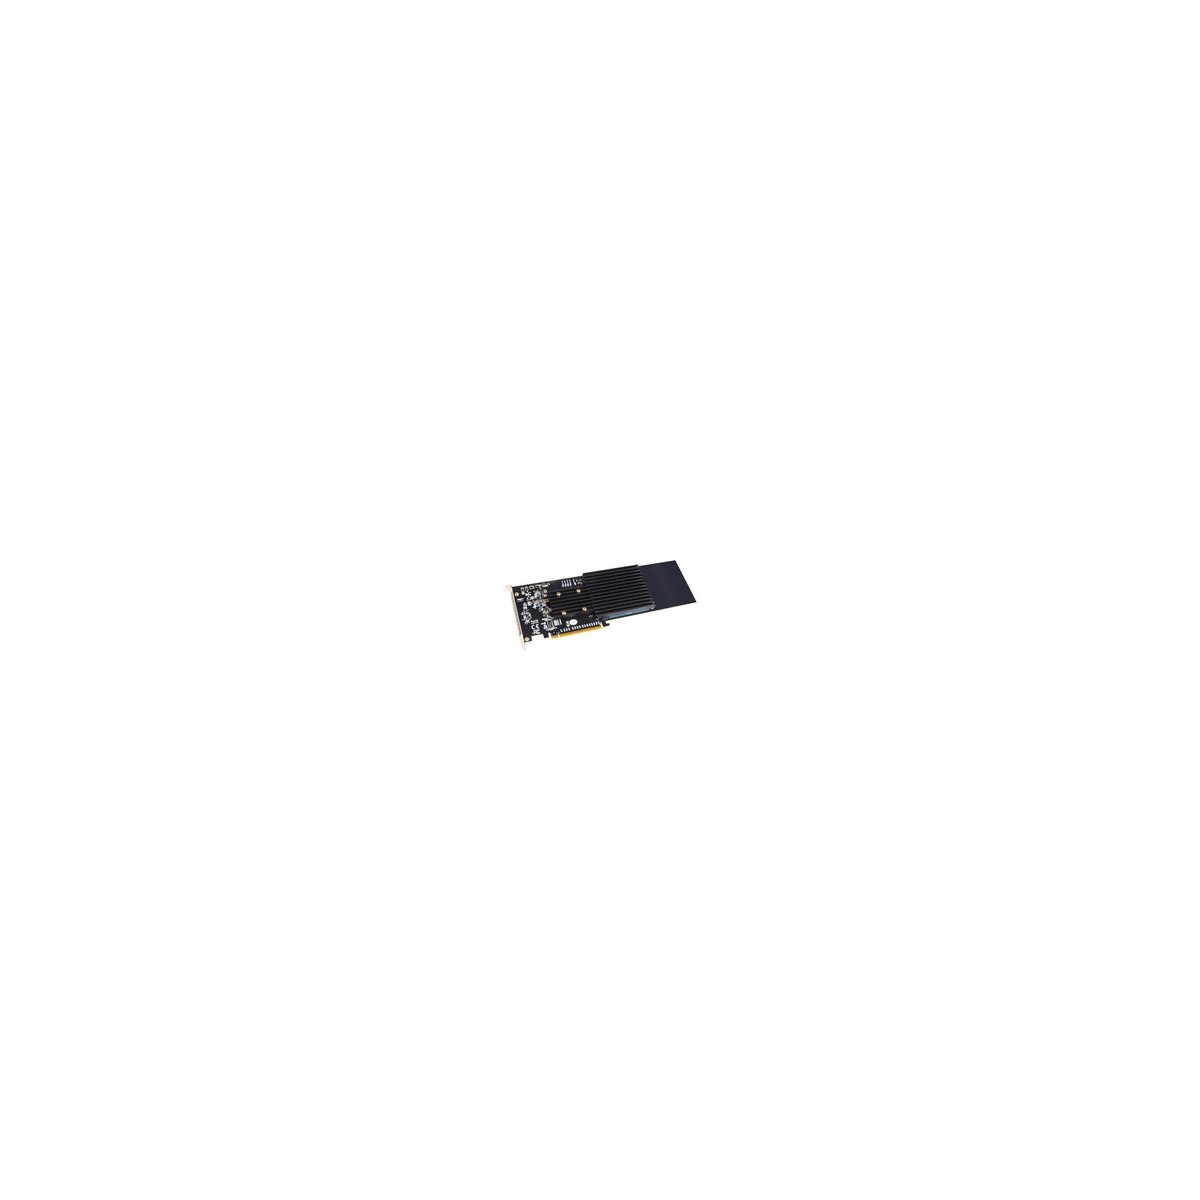 Sonnet FUS-SSD-4X4-E3S - PCIe - M.2 - Full-height - Full-length - PCI 3.0 - Black - Grey - 1 pc(s)